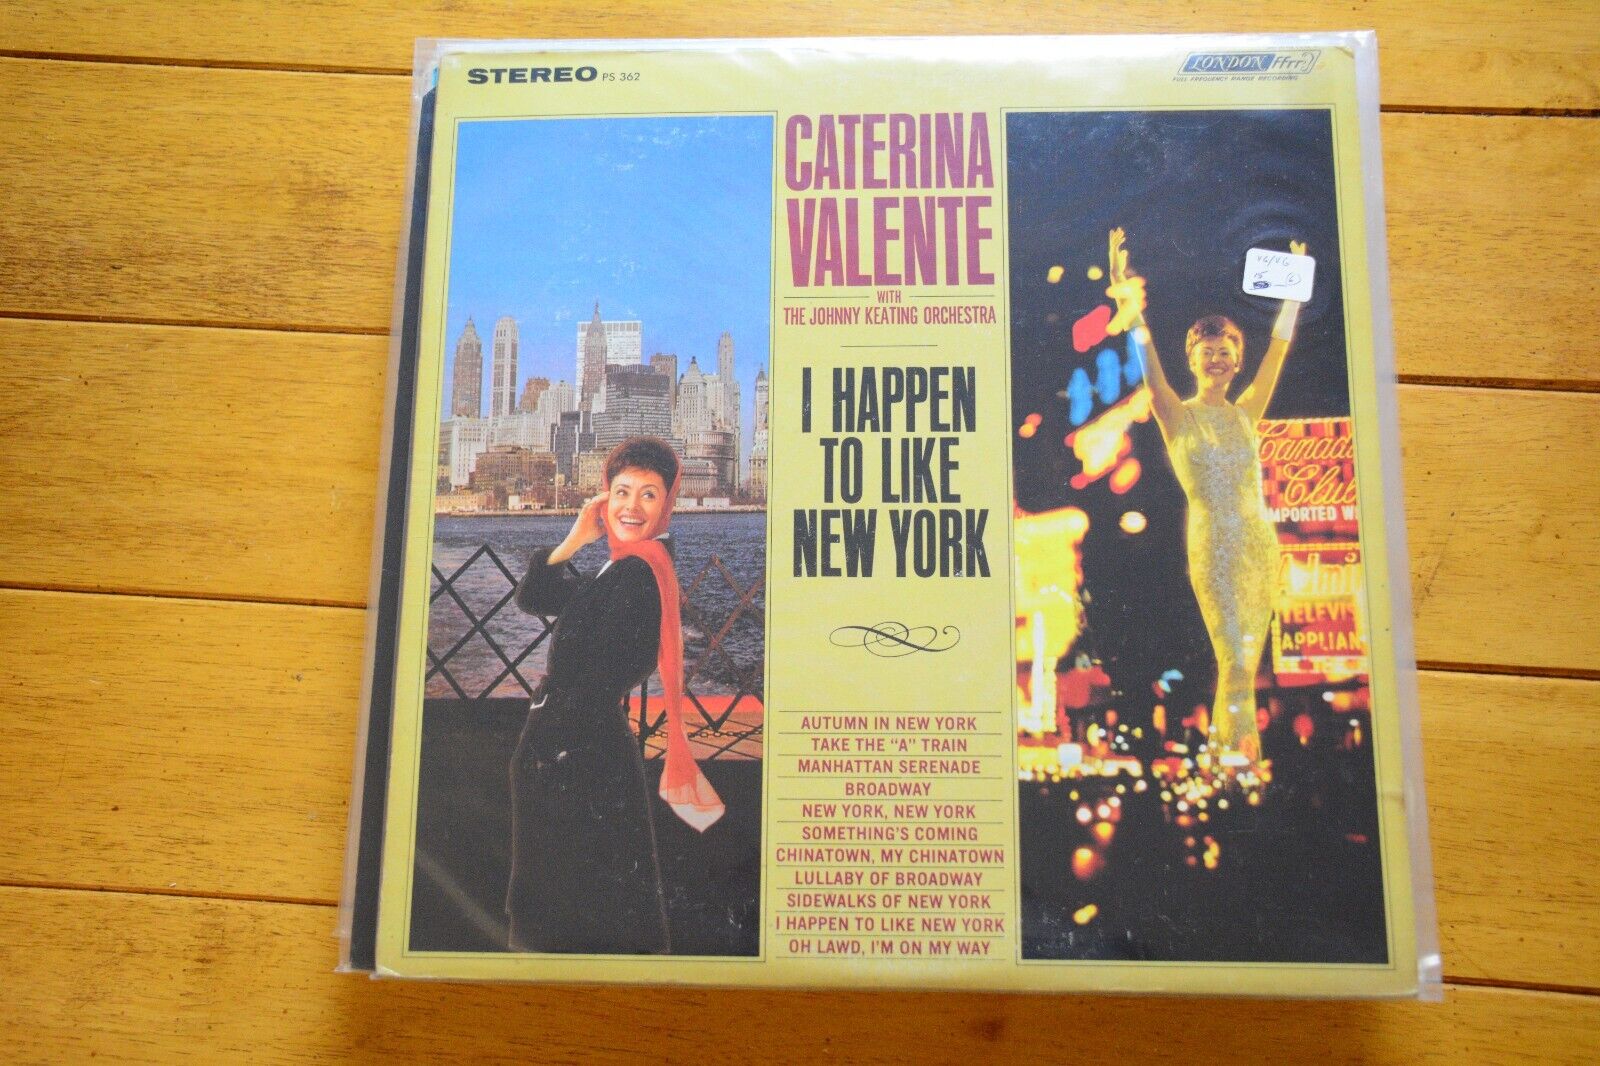 CATERINA VALENTE "I HAPPEN TO LIKE NEW YORK" LP 12" VINYL VG LONDON STEREO [71]